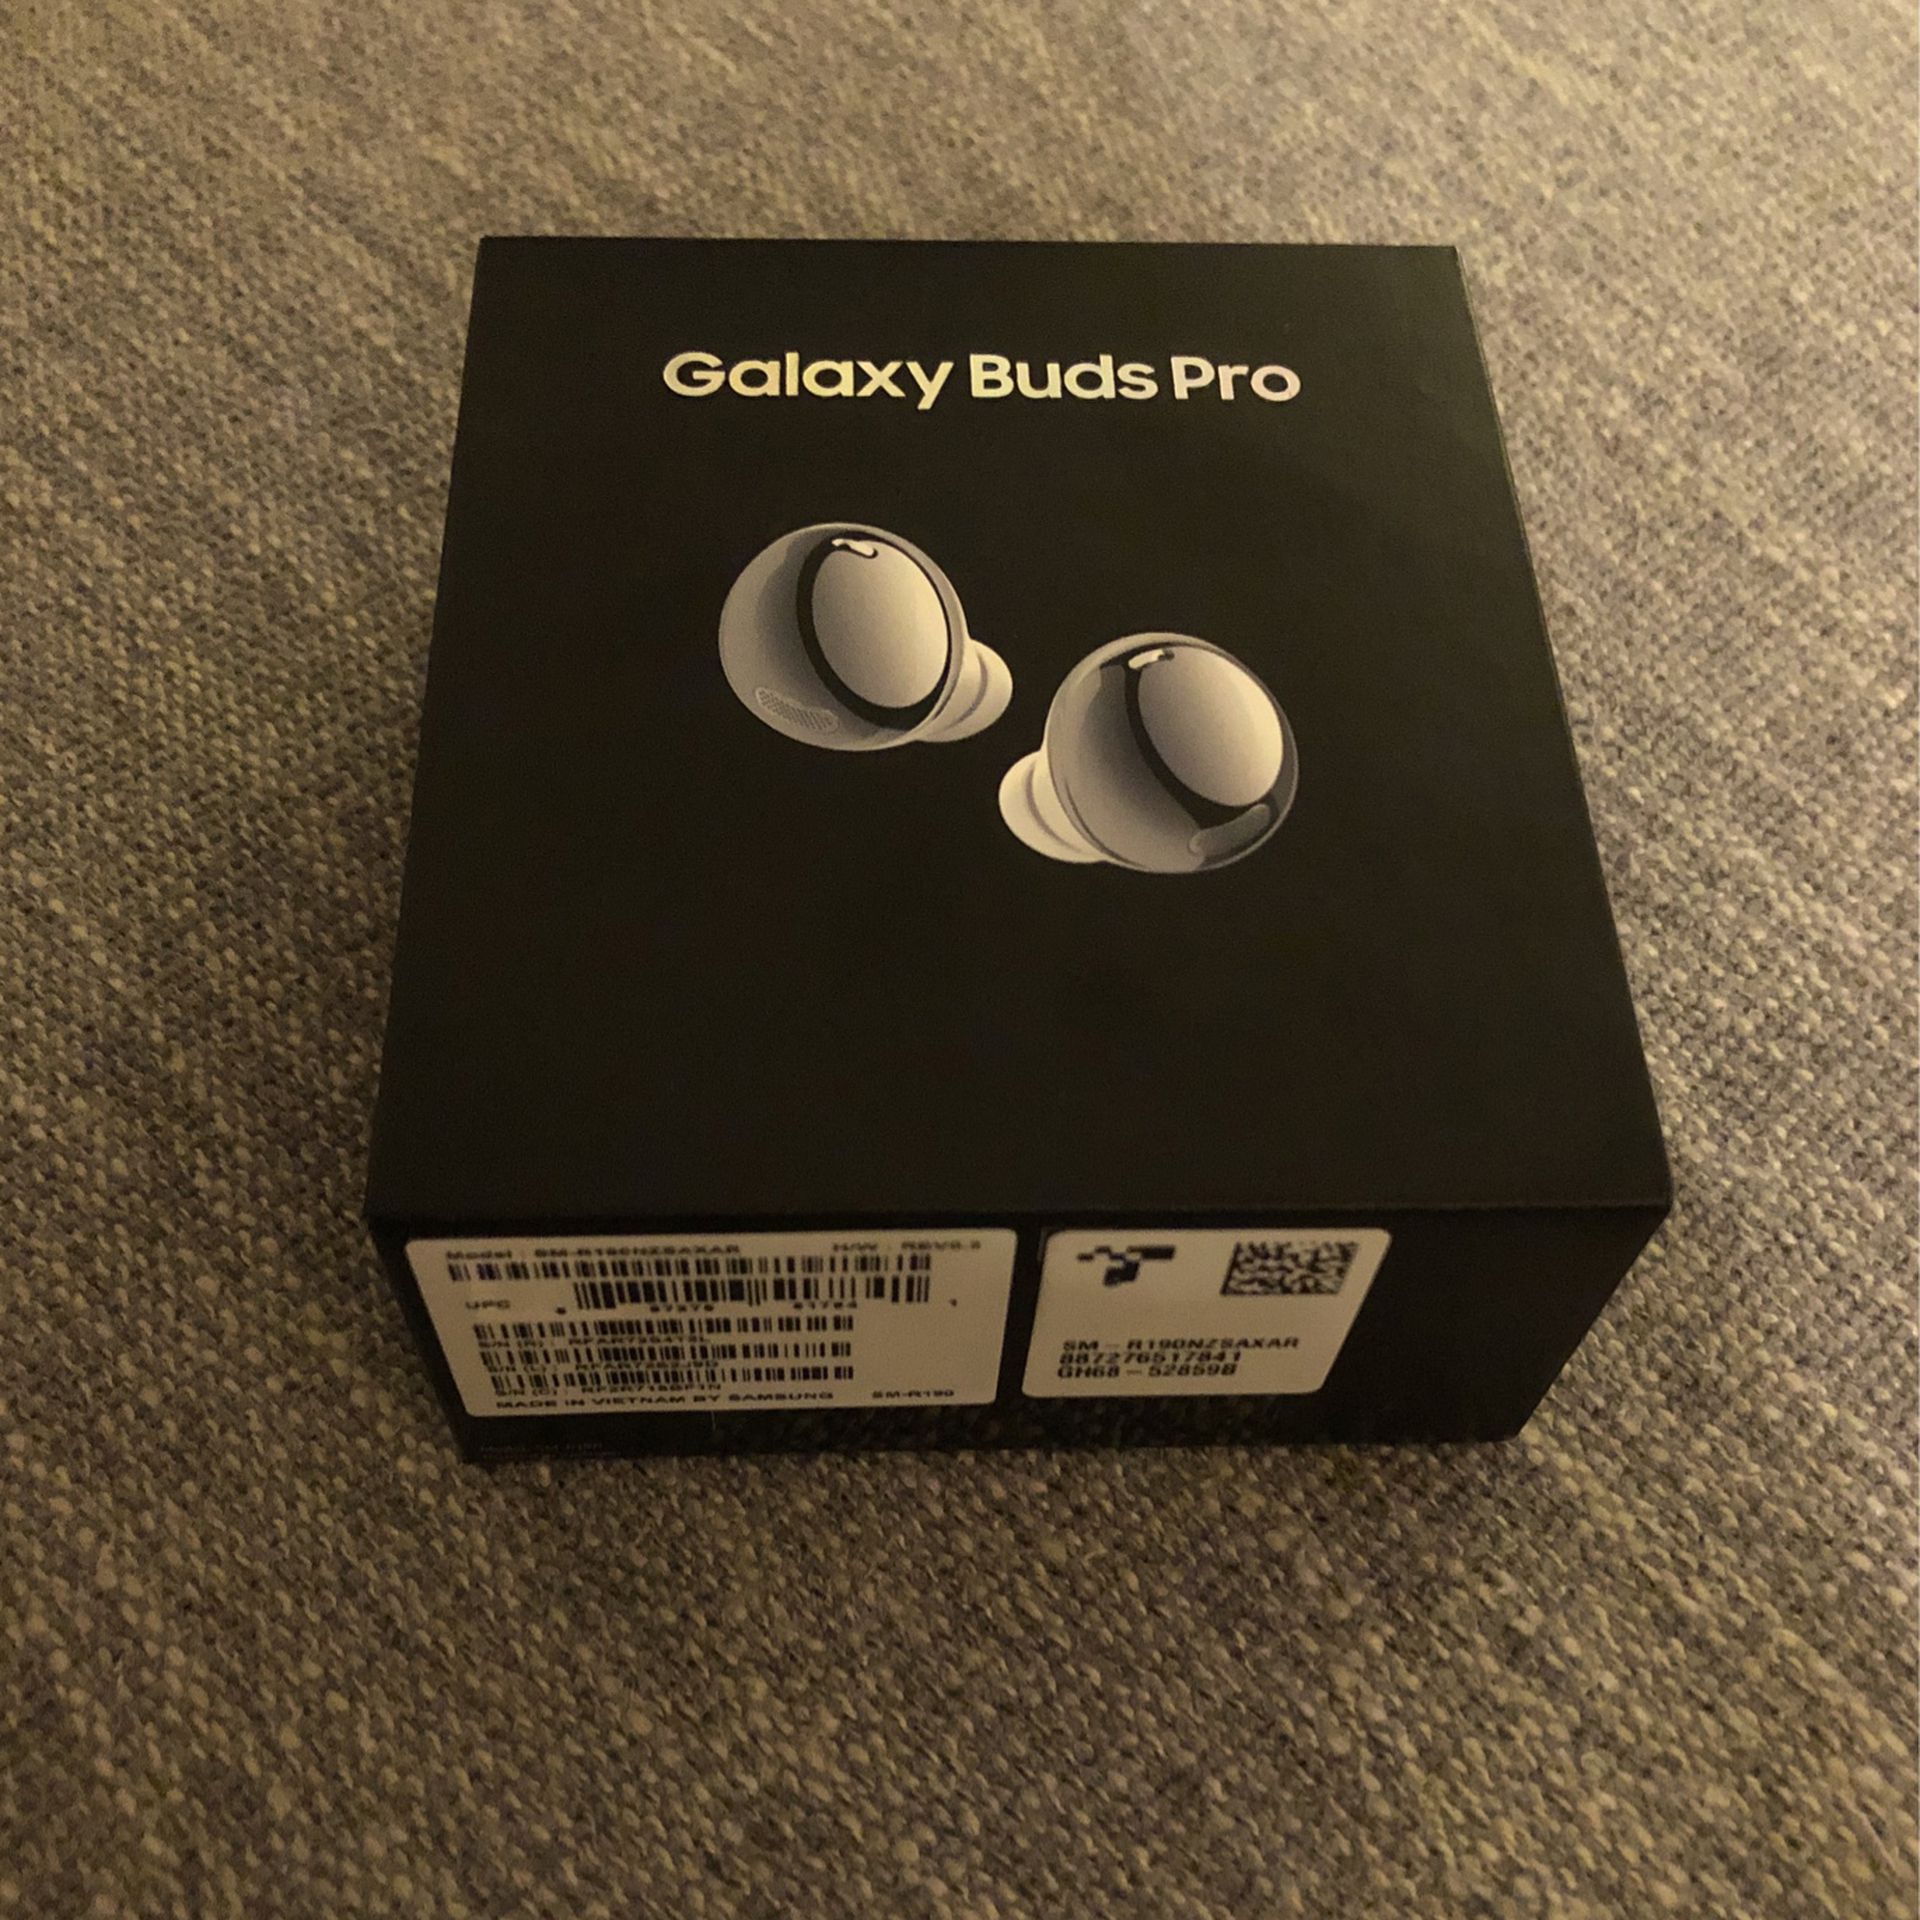 Galaxy Buds Pro - Unopened Box